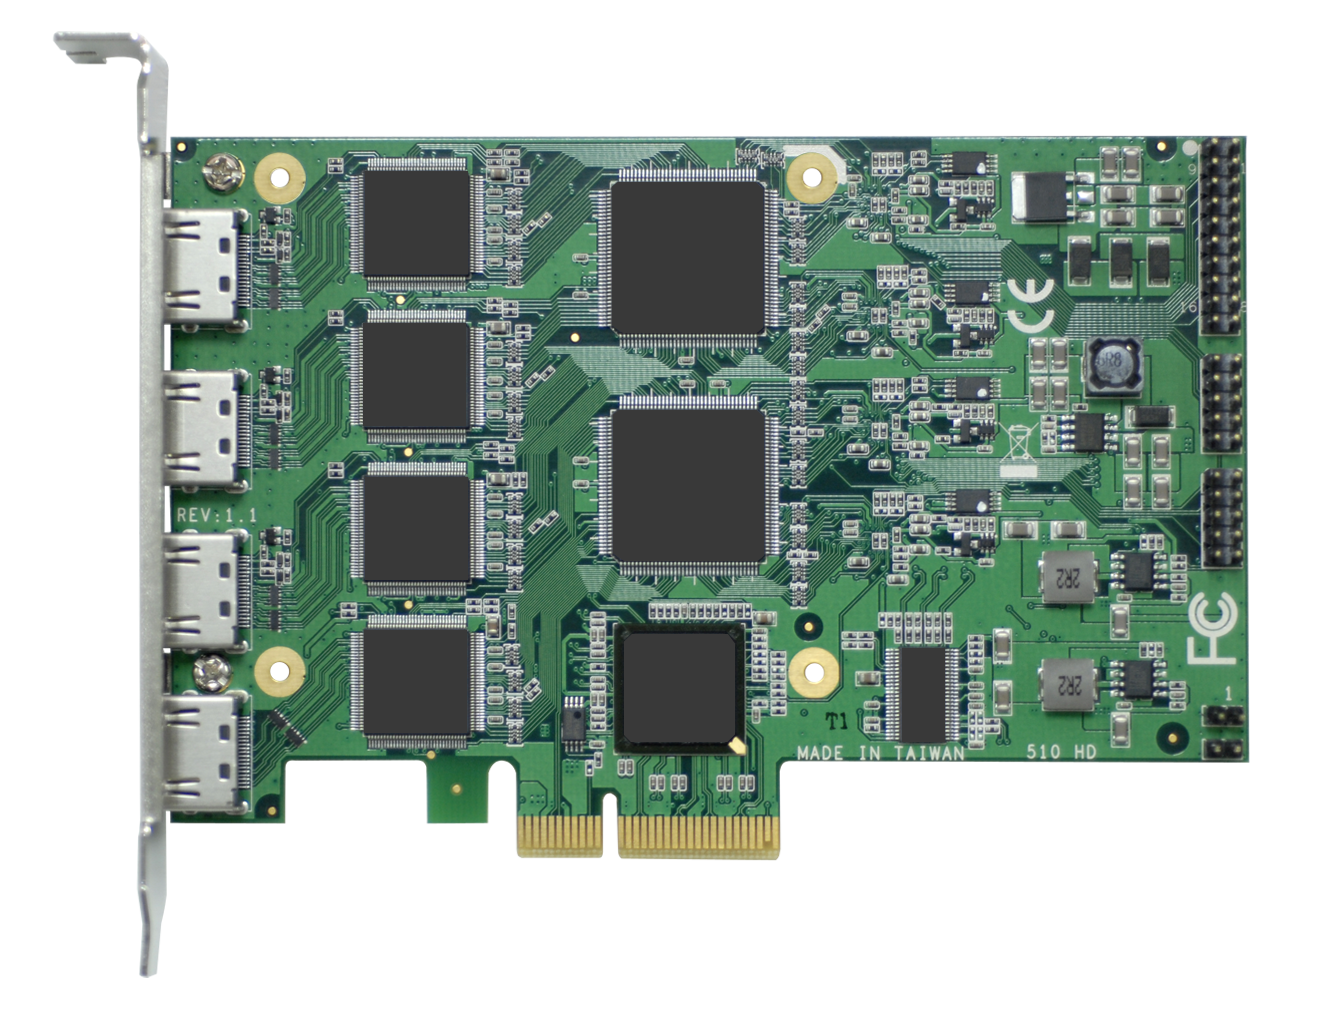 4 채널 풀 HD PCIe 비디오 압축 카드 (SDK 포함)